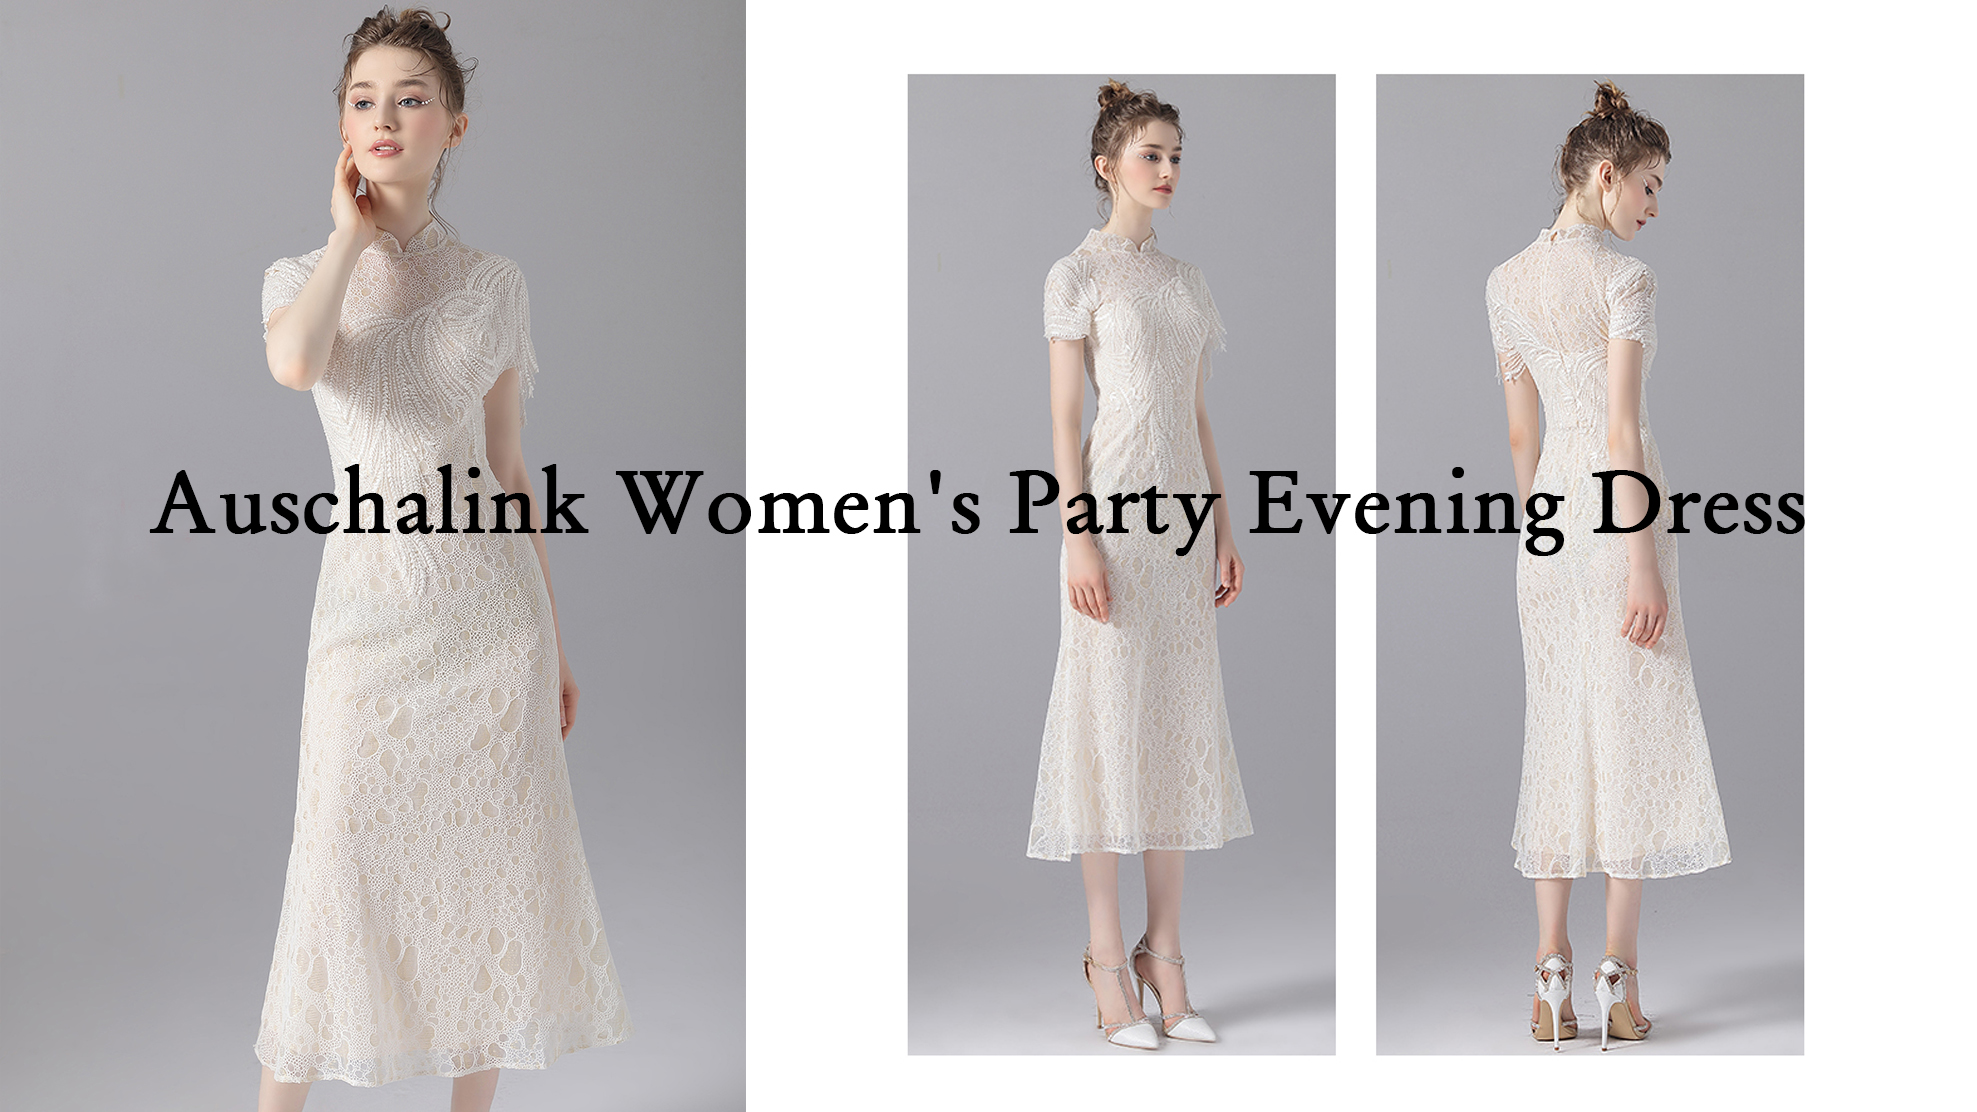 Women's Wedding Bridesmaids Party Evening Dress Products | Auschalink